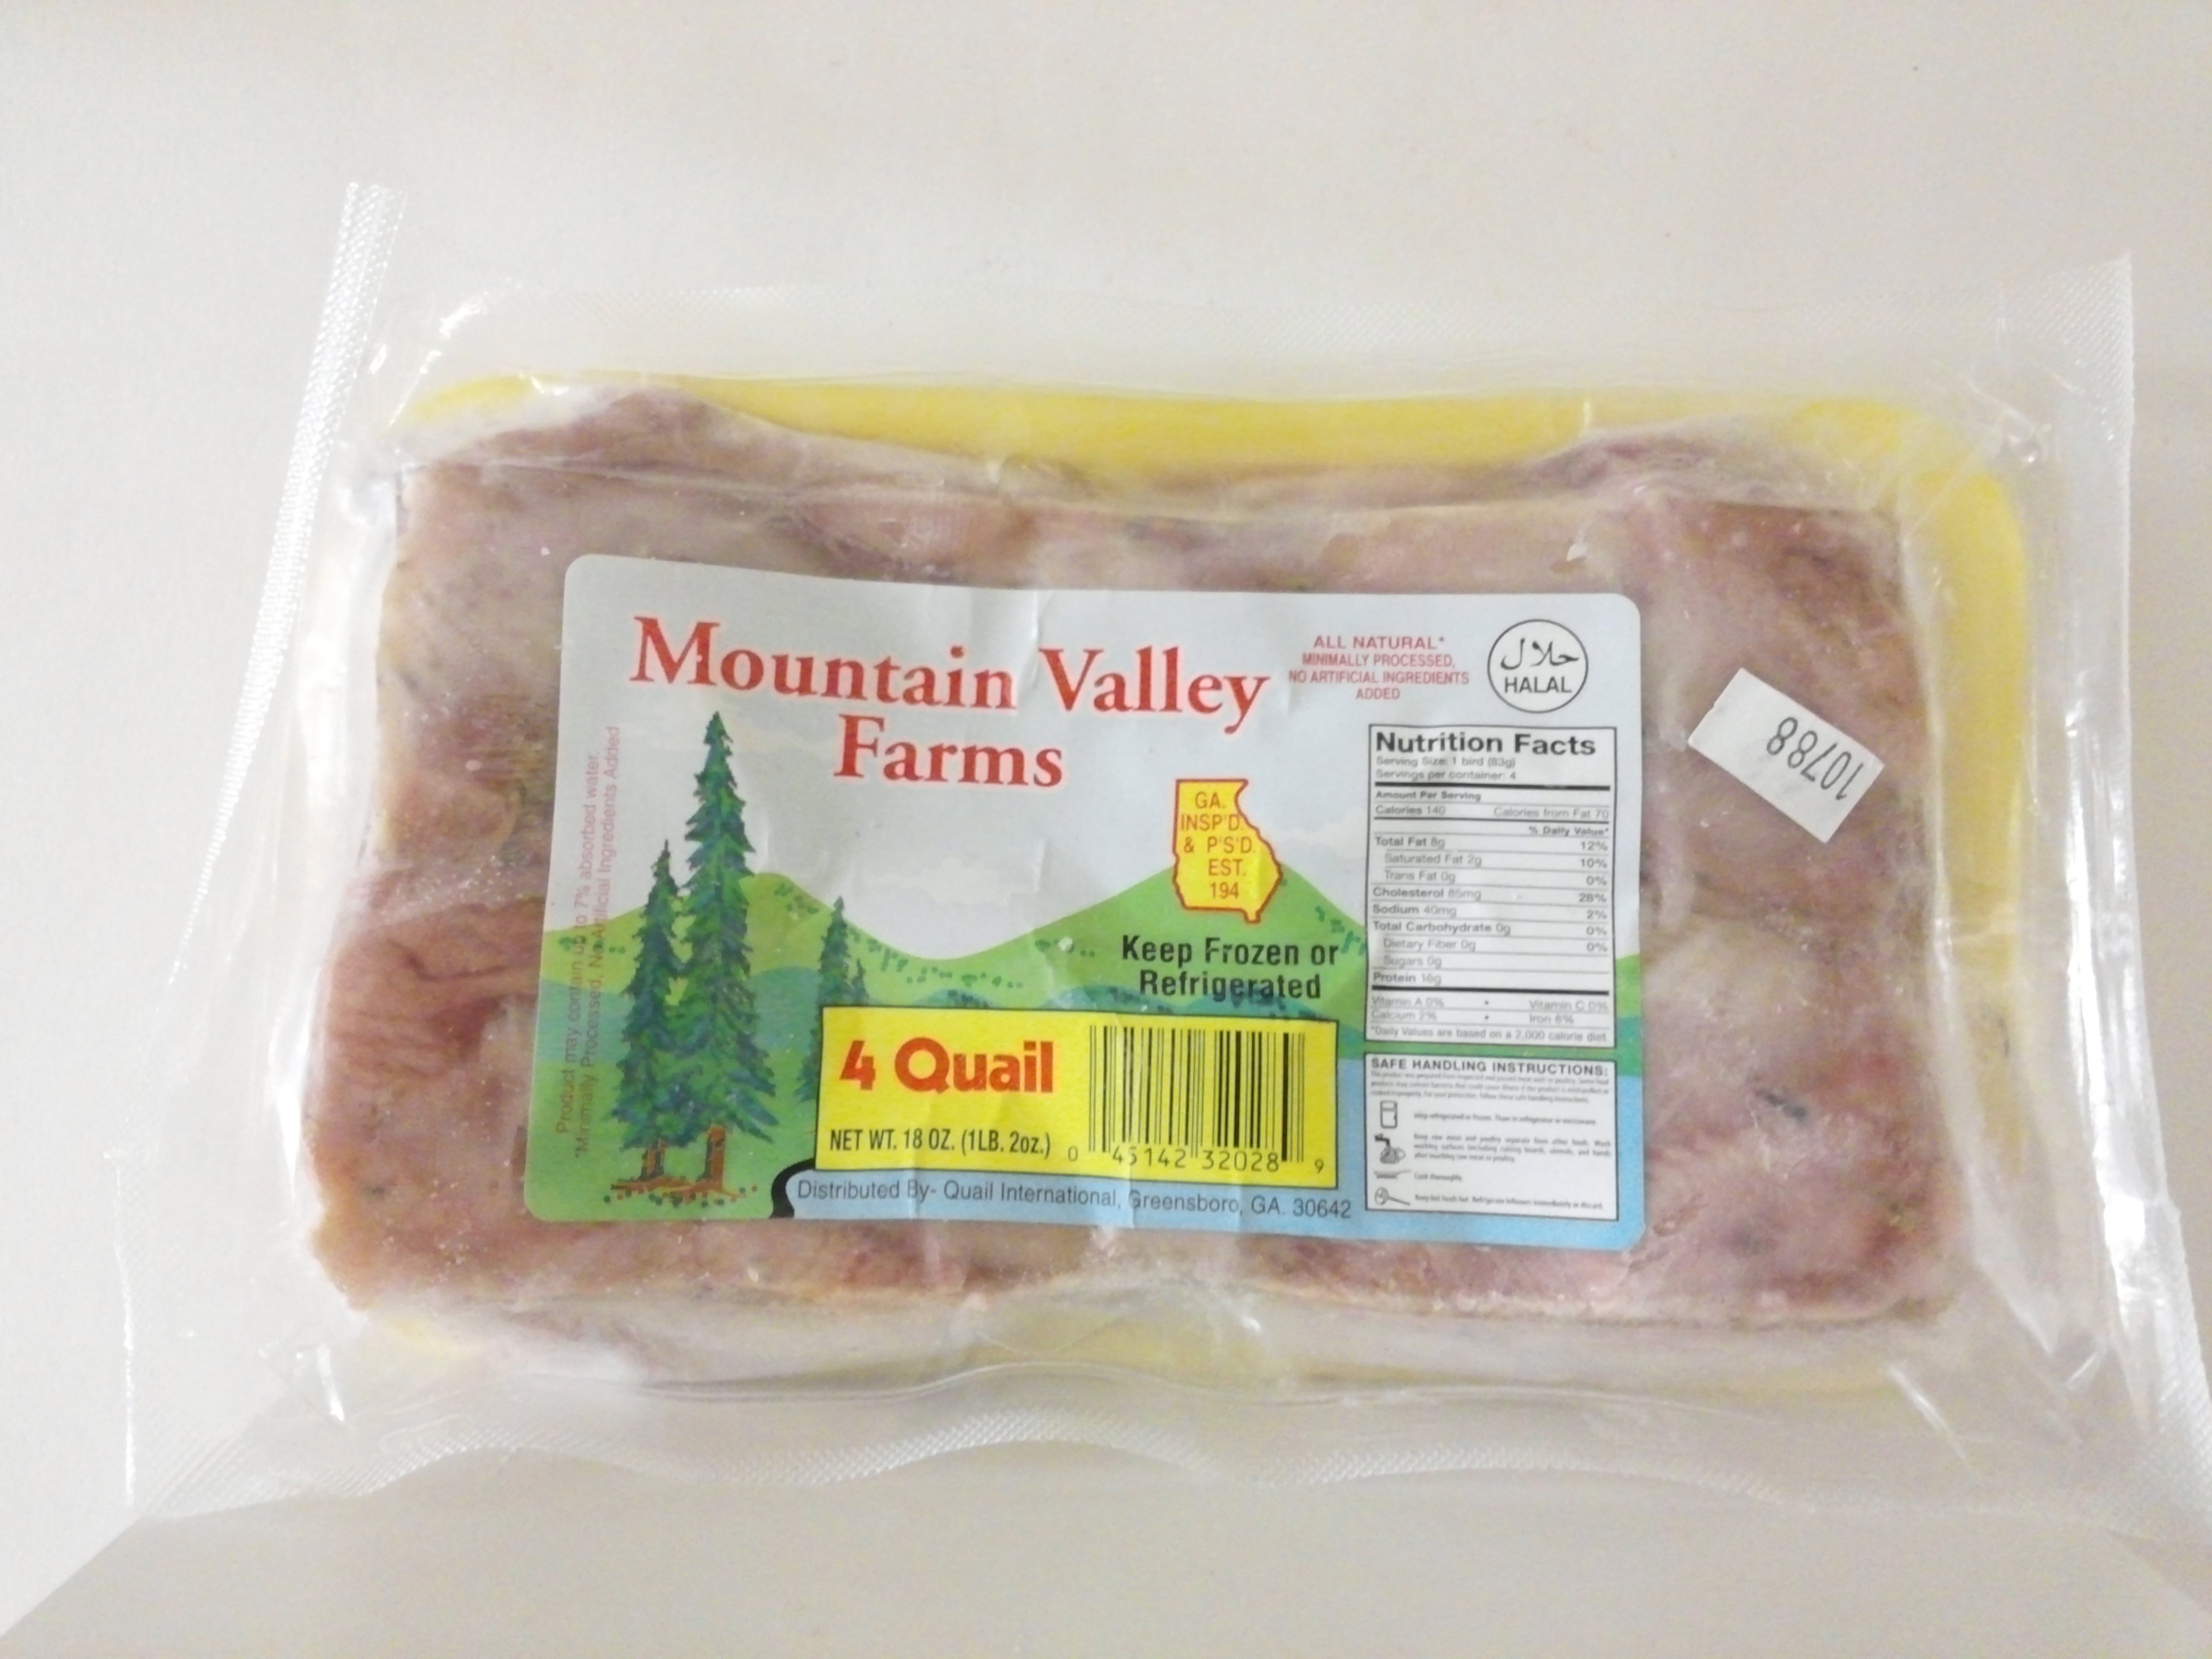 Mountain Valley Farm's Quail, 4nos-18 oz